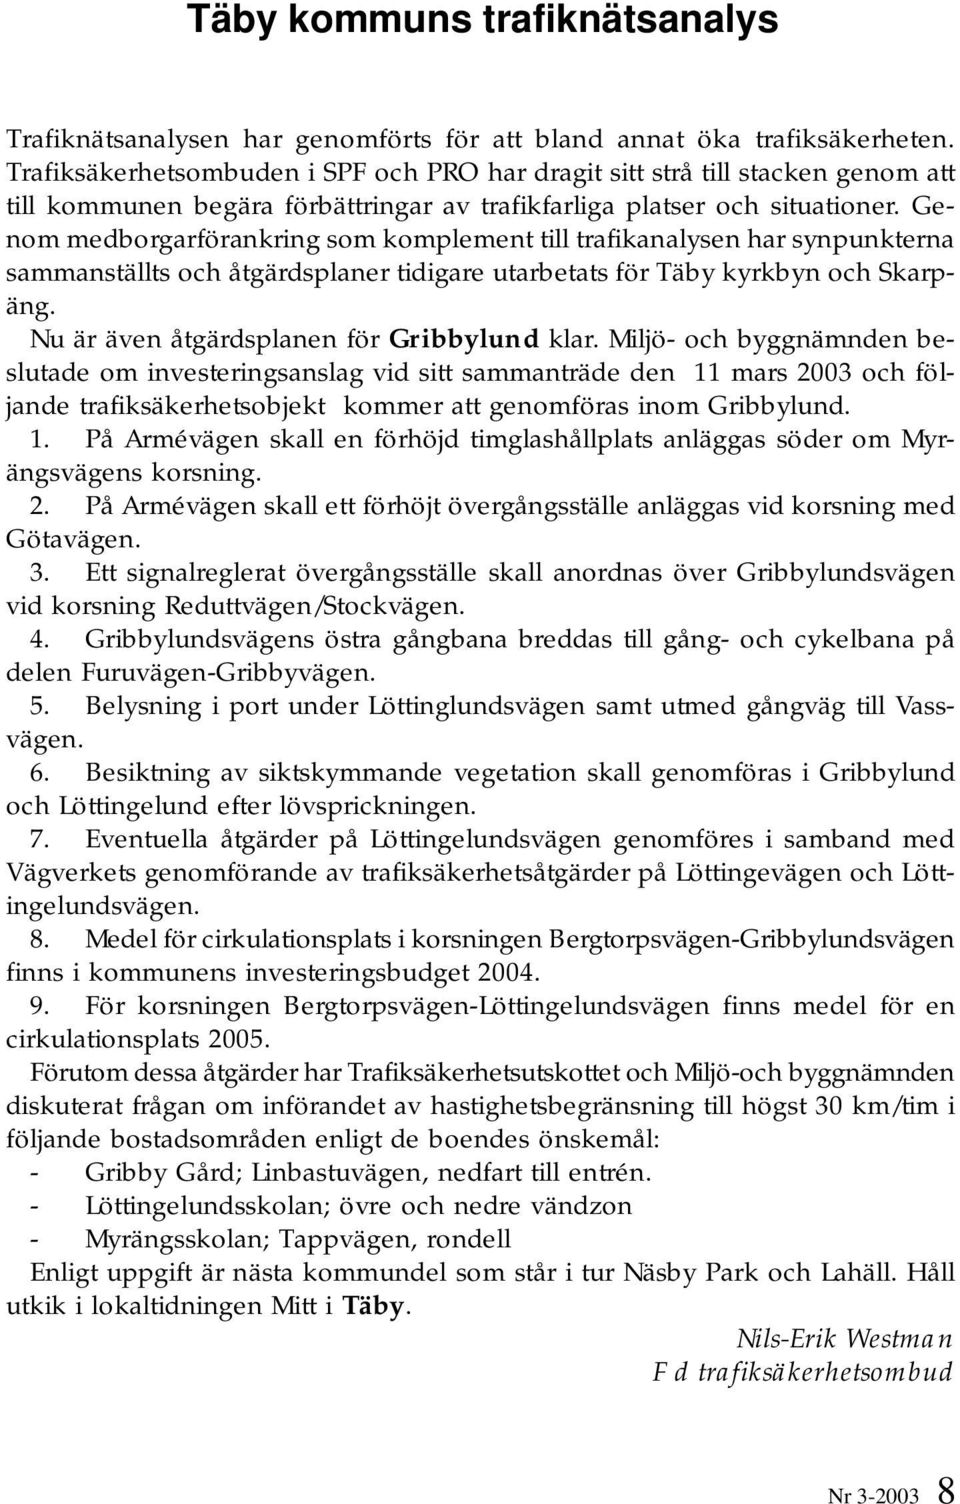 Genom medborgarförankring som komplement till trafikanalysen har synpunkterna sammanställts och åtgärdsplaner tidigare utarbetats för Täby kyrkbyn och Skarpäng.